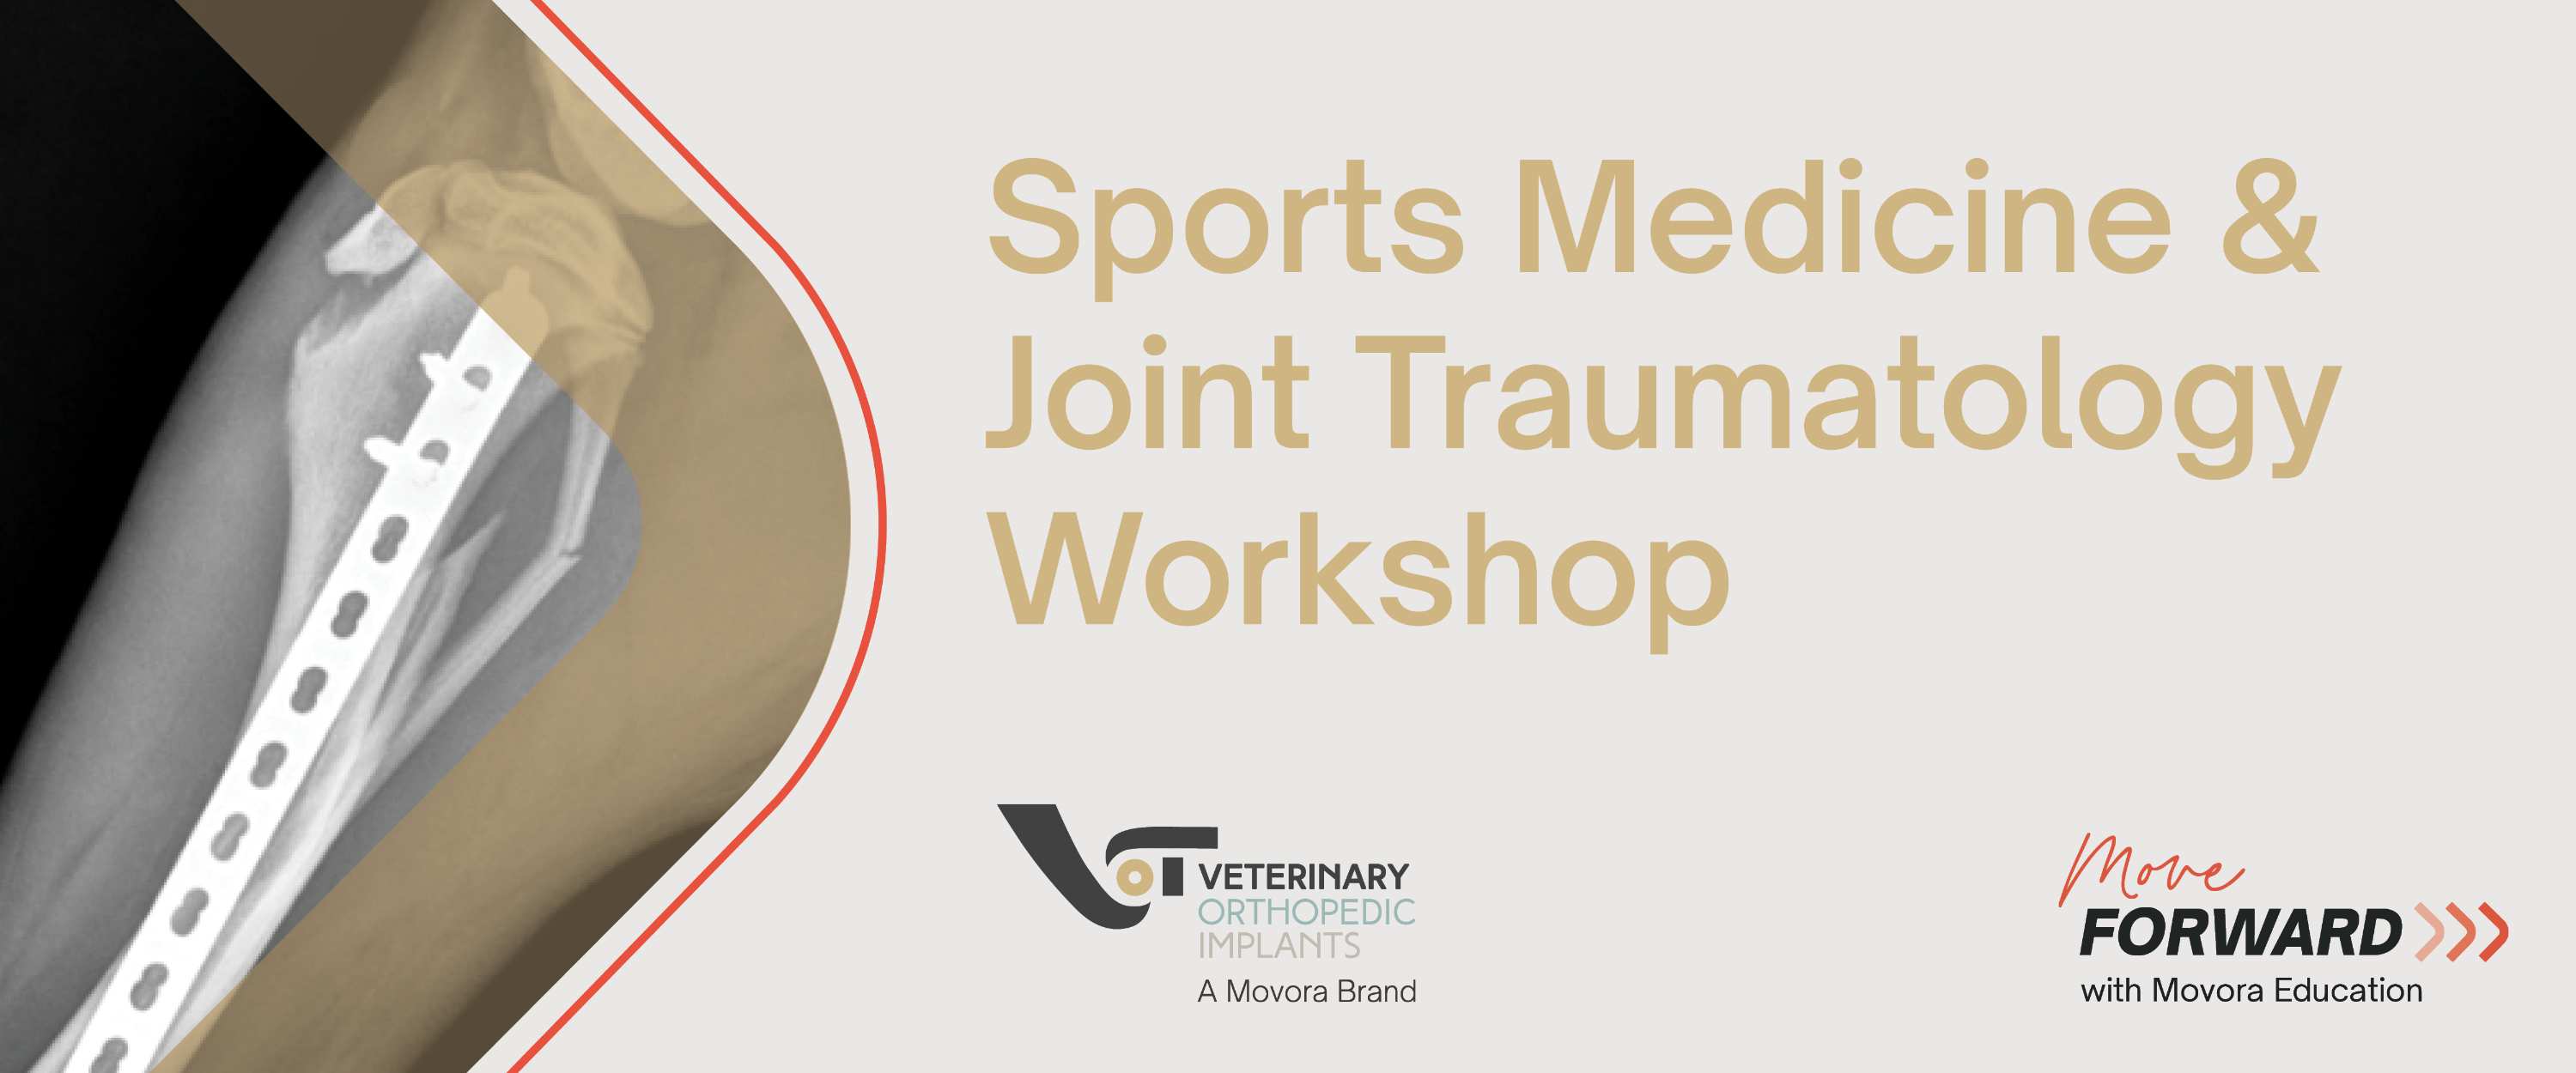 VOI Sports Medicine & Joint Traumatology Workshop banner